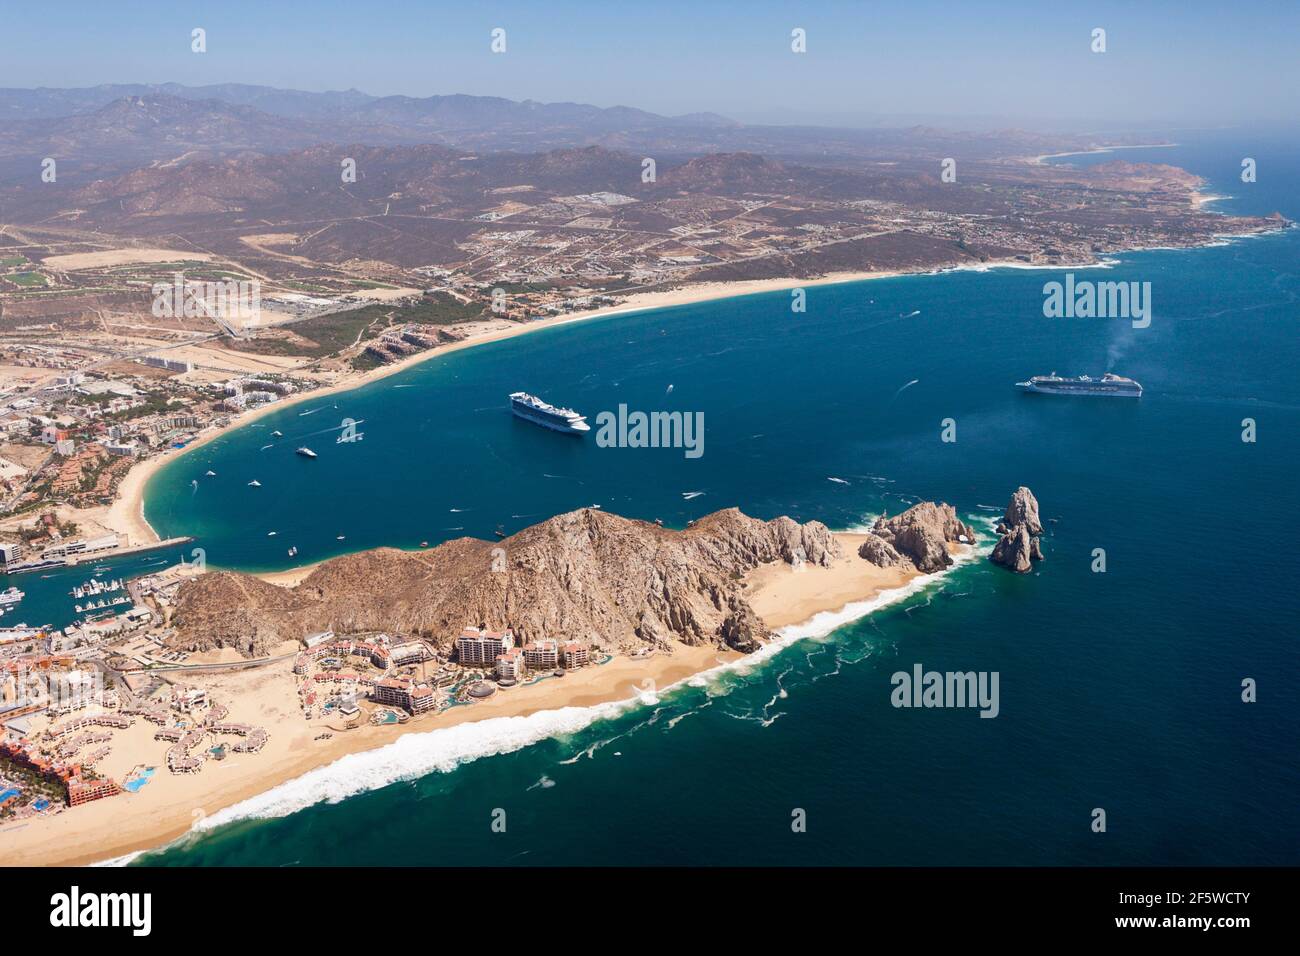 Vue de Lands End et Cabo San Lucas, Cabo San Lucas, Baja California sur, Mexique Banque D'Images